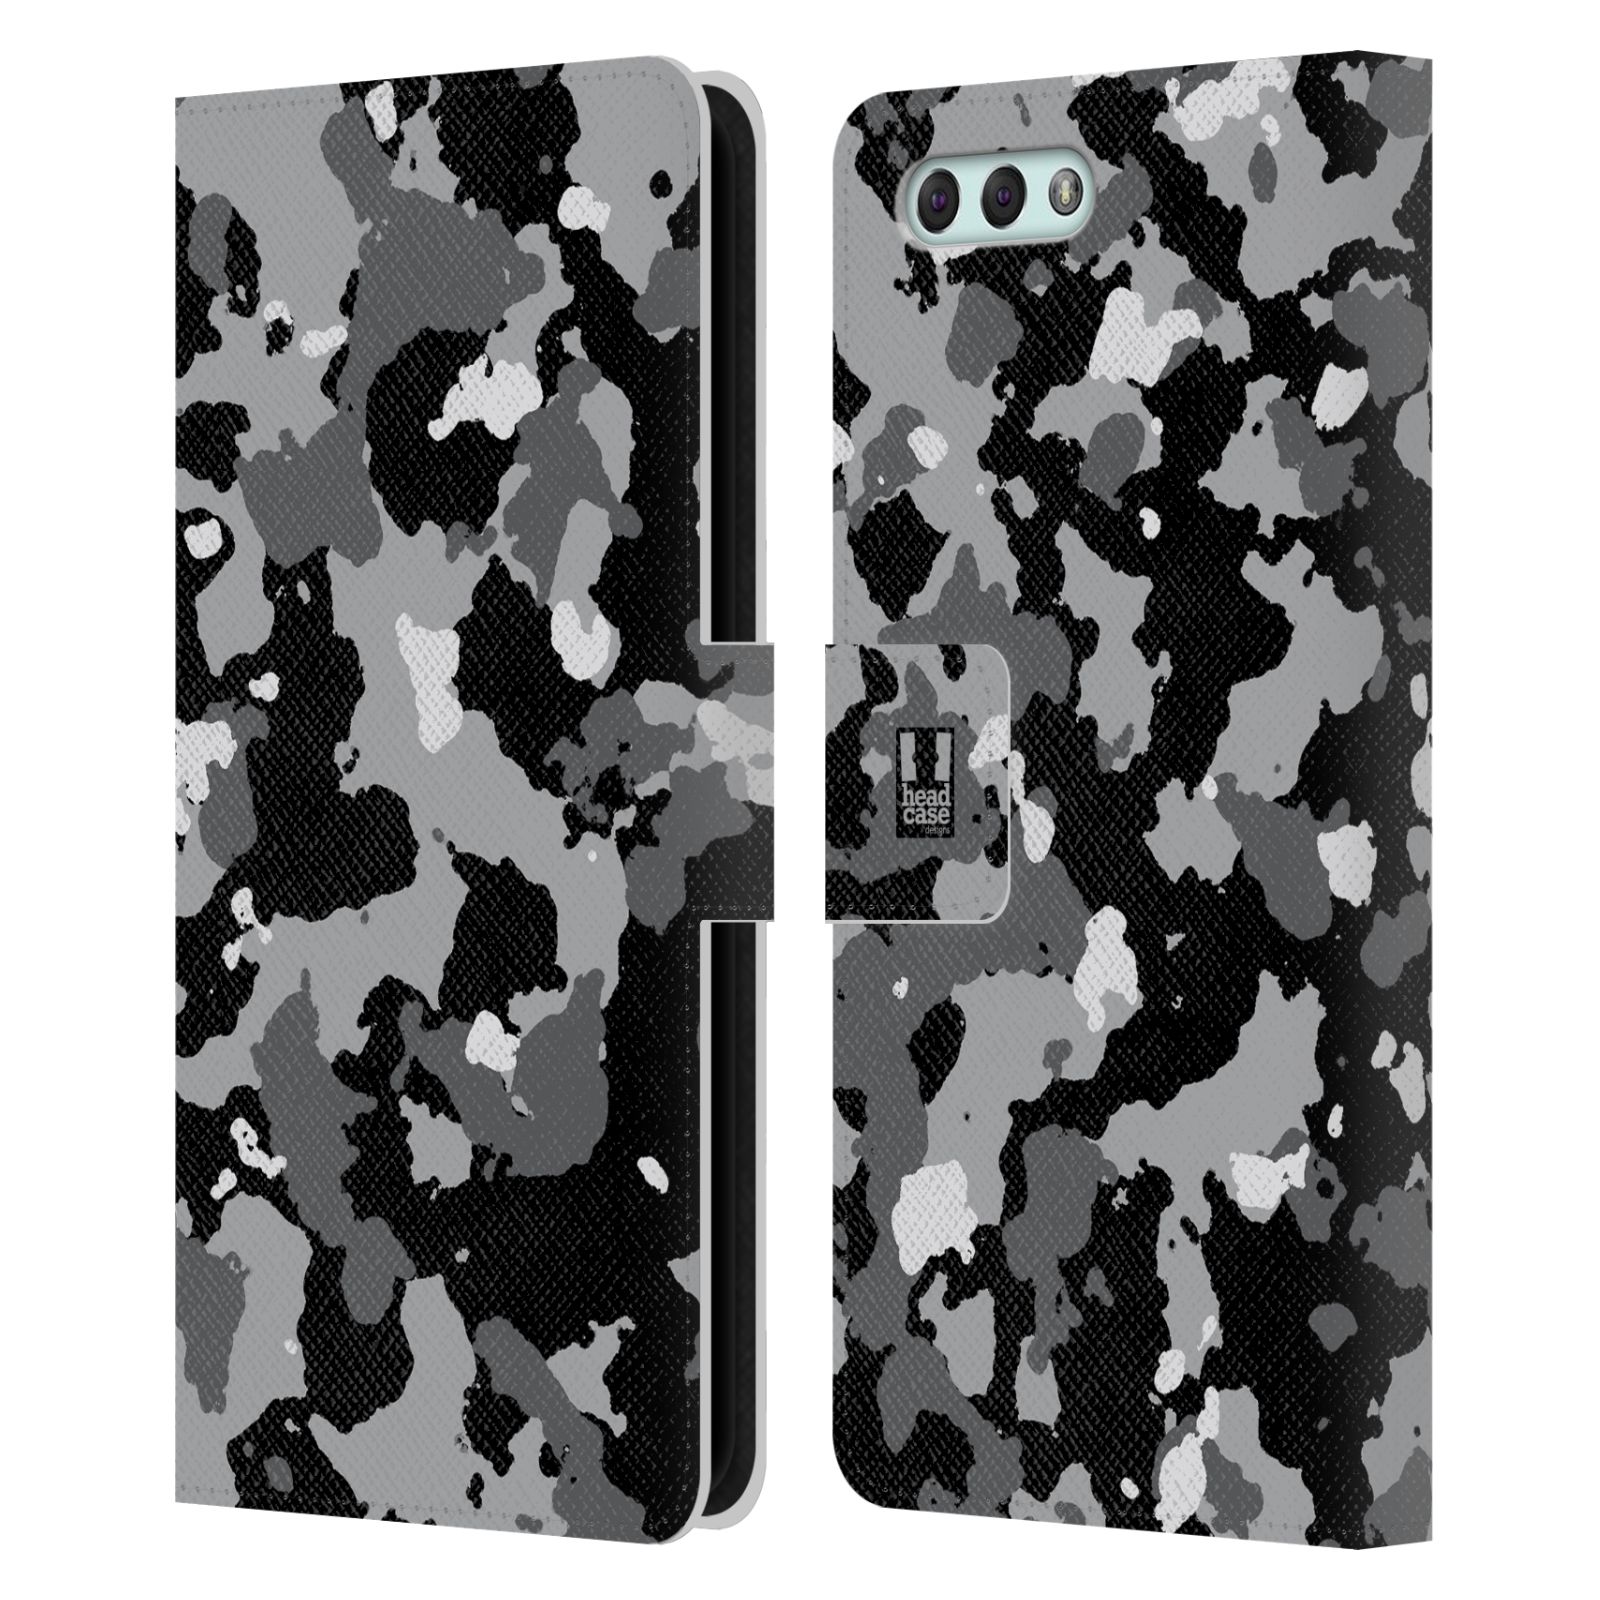 Pouzdro na mobil Asus Zenfone 4 ZE554KL - Head Case - kamuflaž černá a šedá